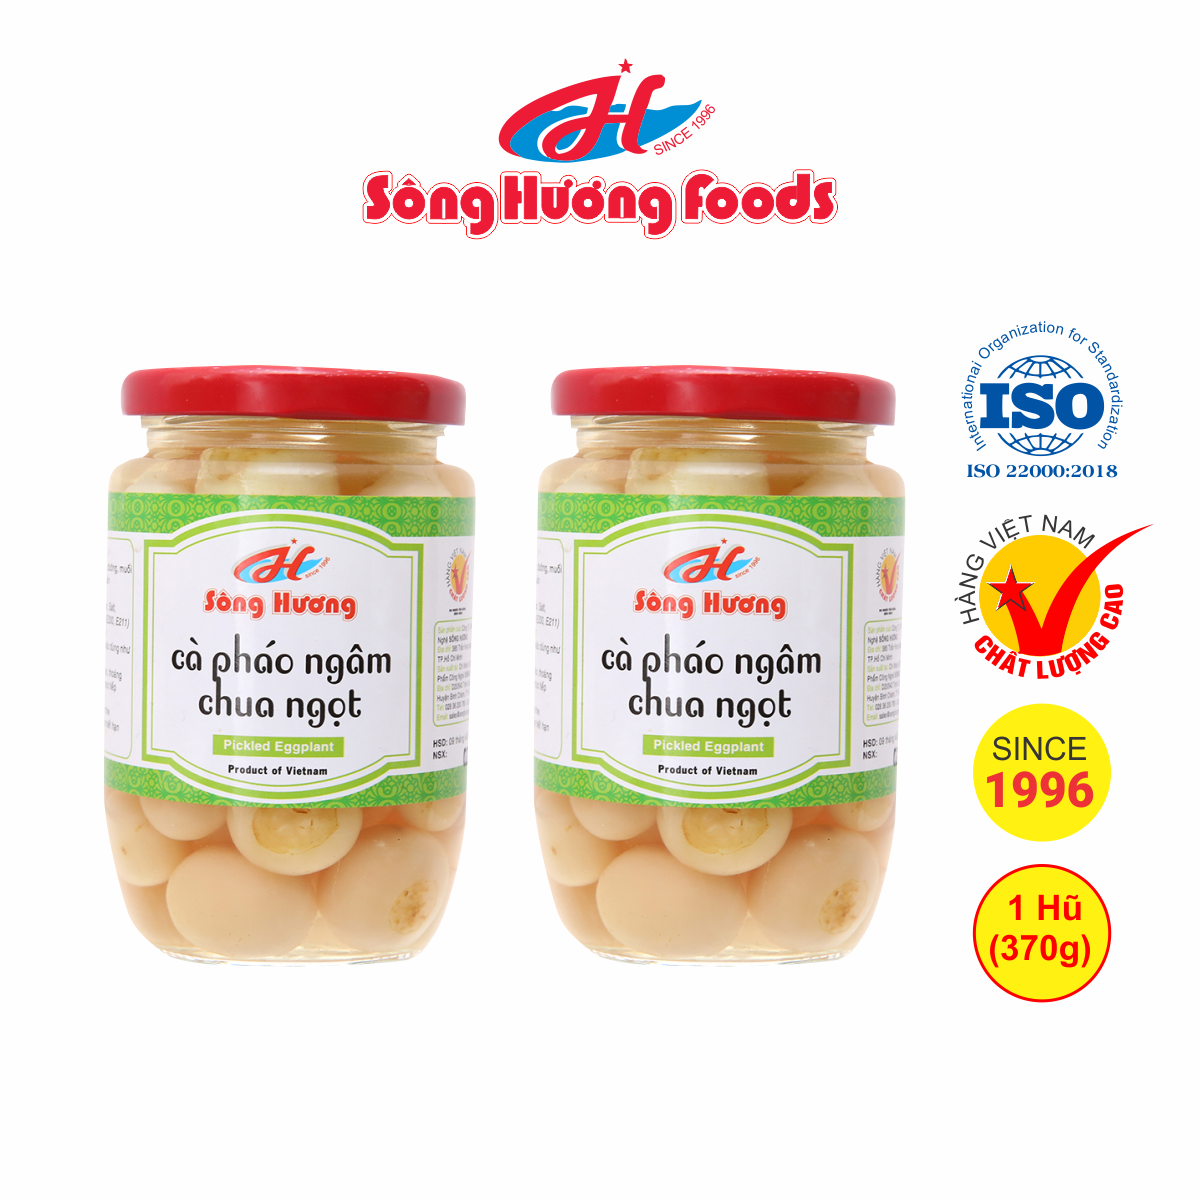 2 Hũ Cà Pháo Muối Ngâm Chua Ngọt Sông Hương Foods Hũ 370g - Ăn kèm cơm